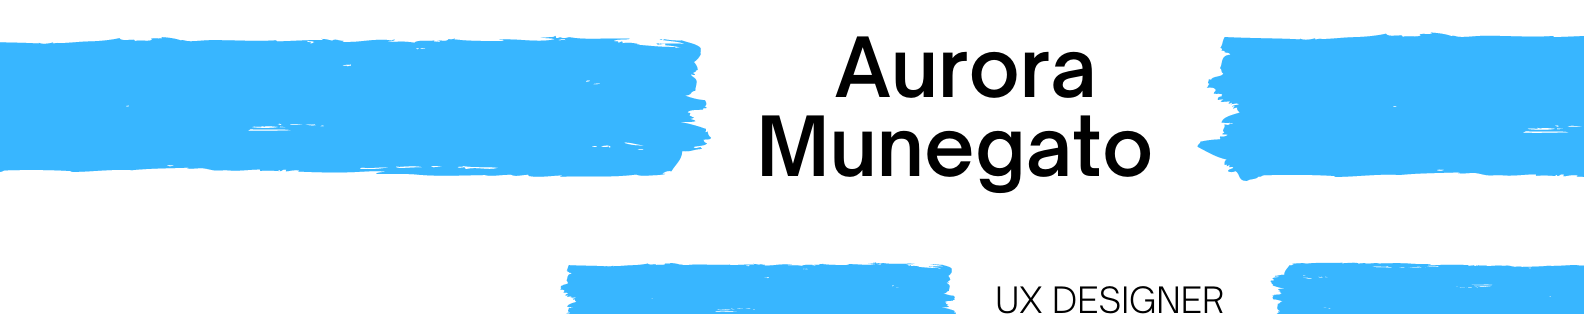 Aurora Munegato's profile banner